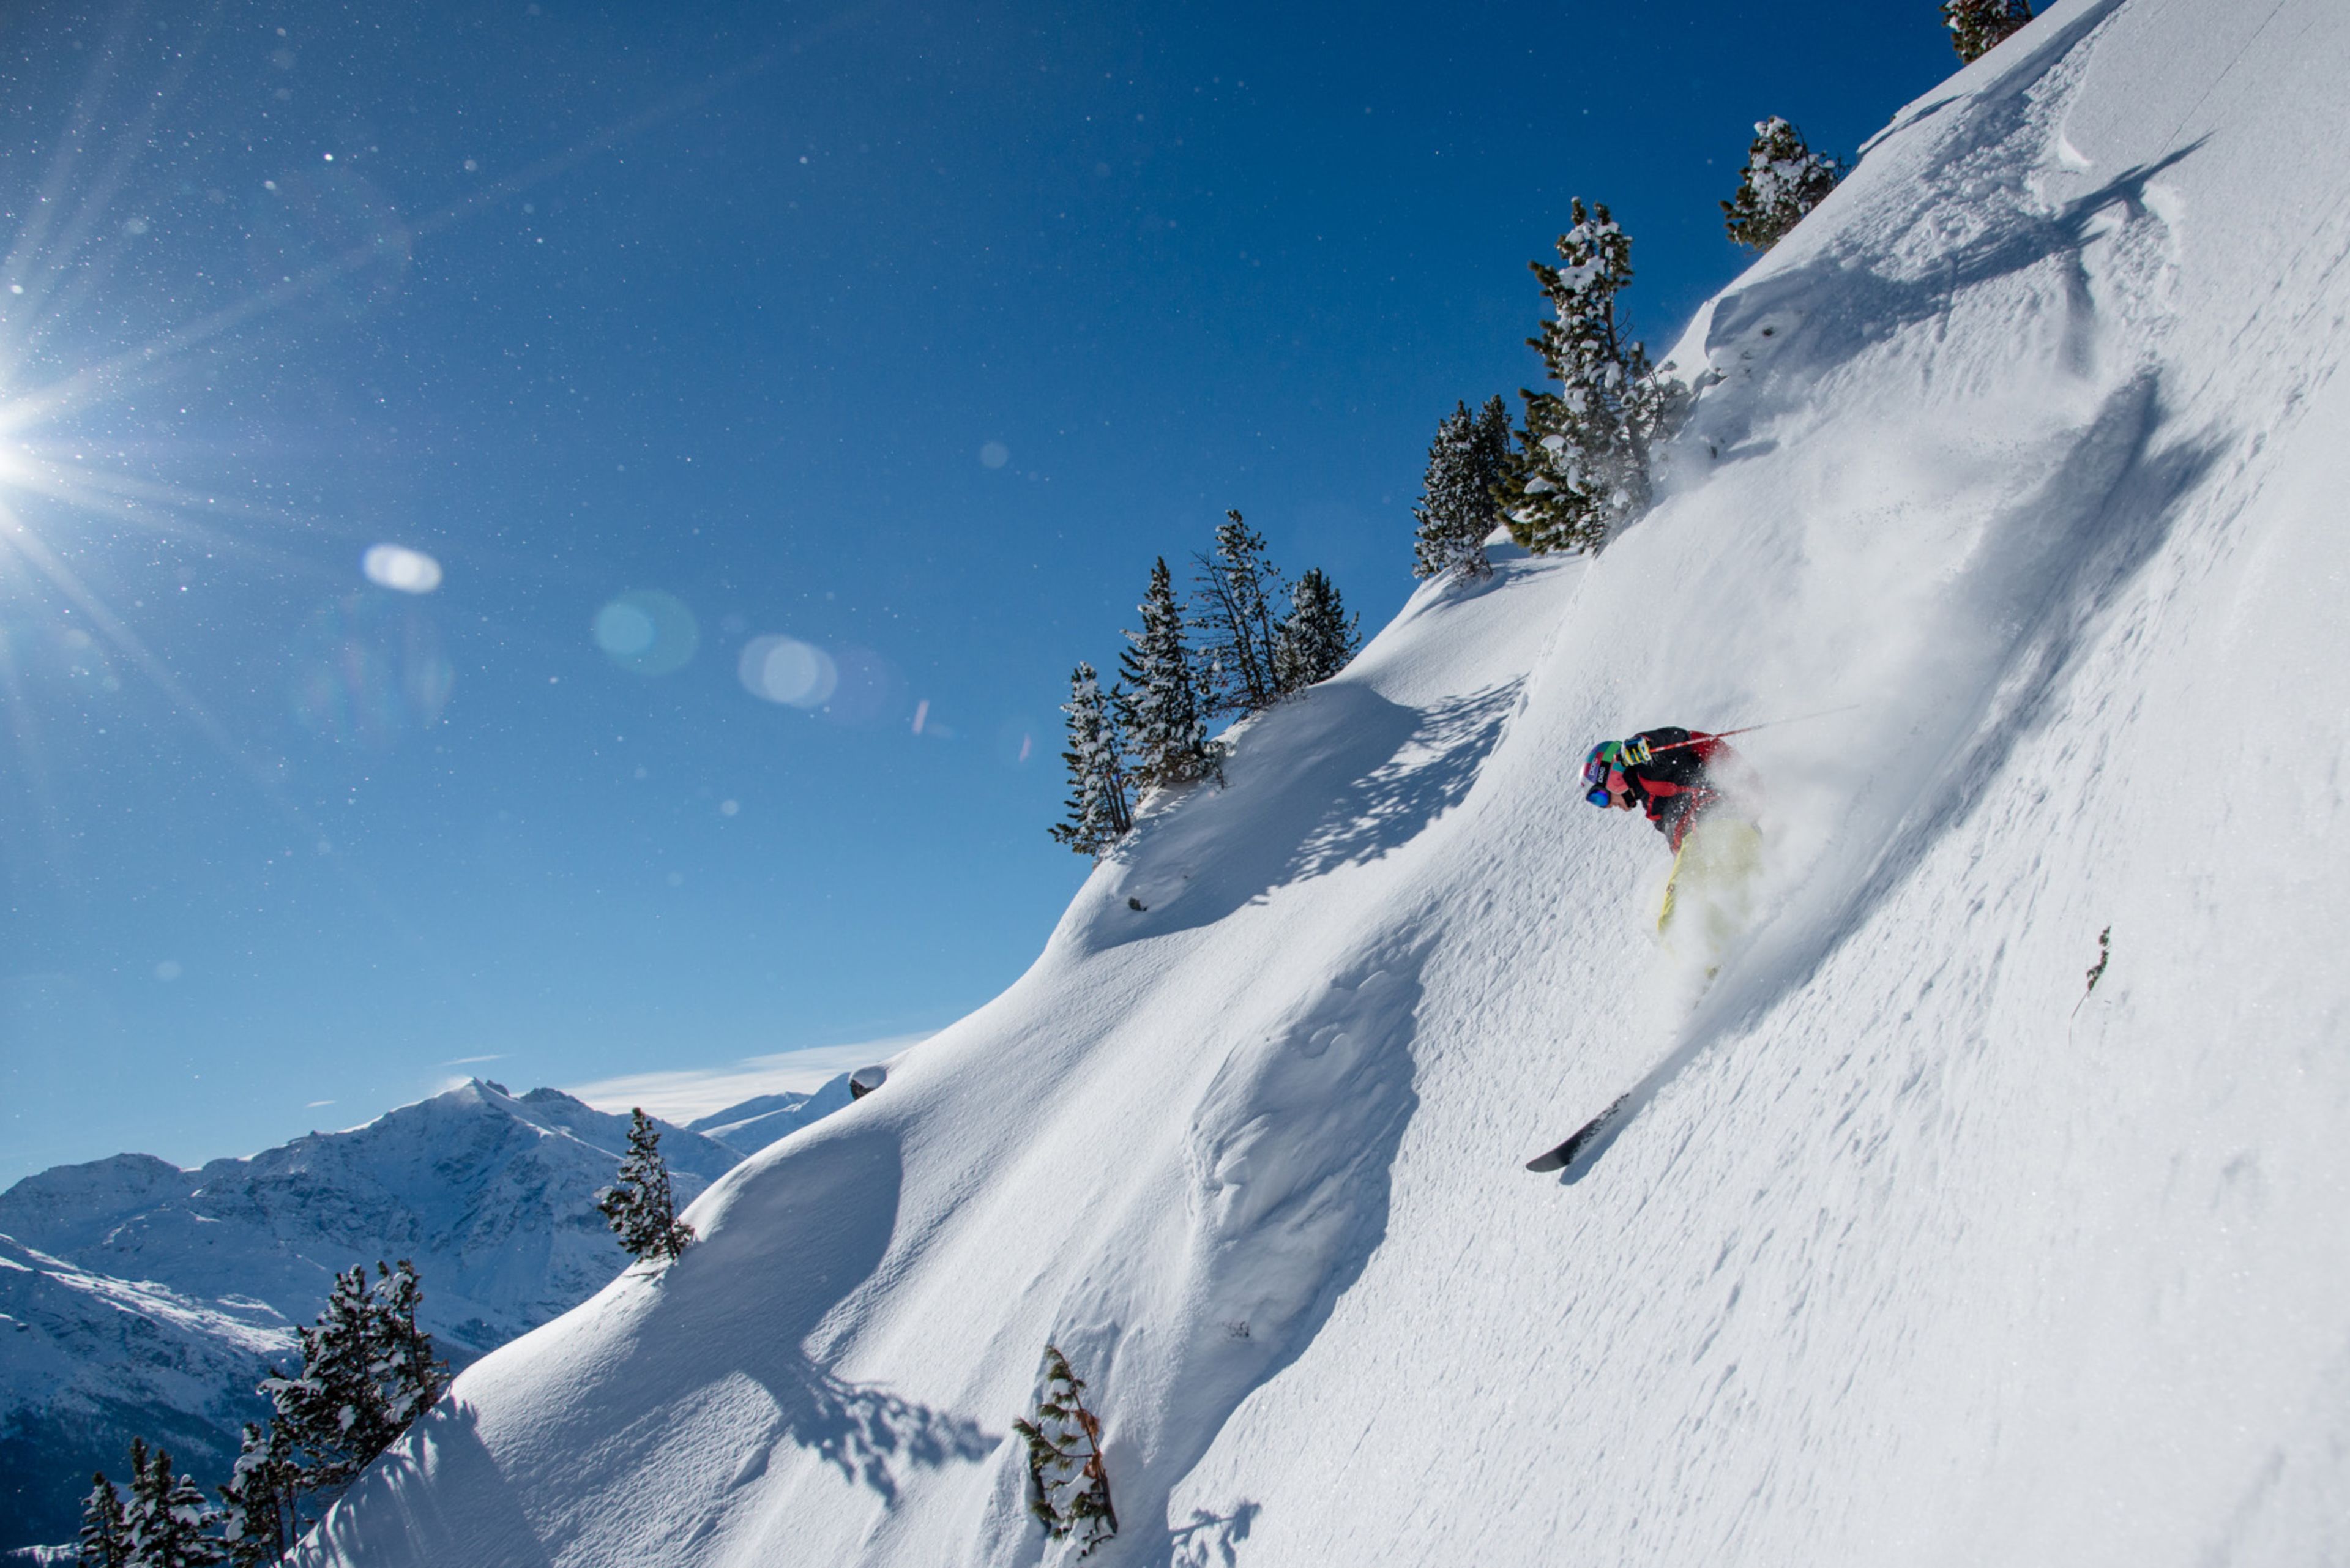 Amélie am Freeriden im Telemark-Stil in der Region Thyon. " Ich kann mir nichts Schöneres vorstellen ", so die Spitzensportlerin. Skifahren im Wallis. Schweiz.